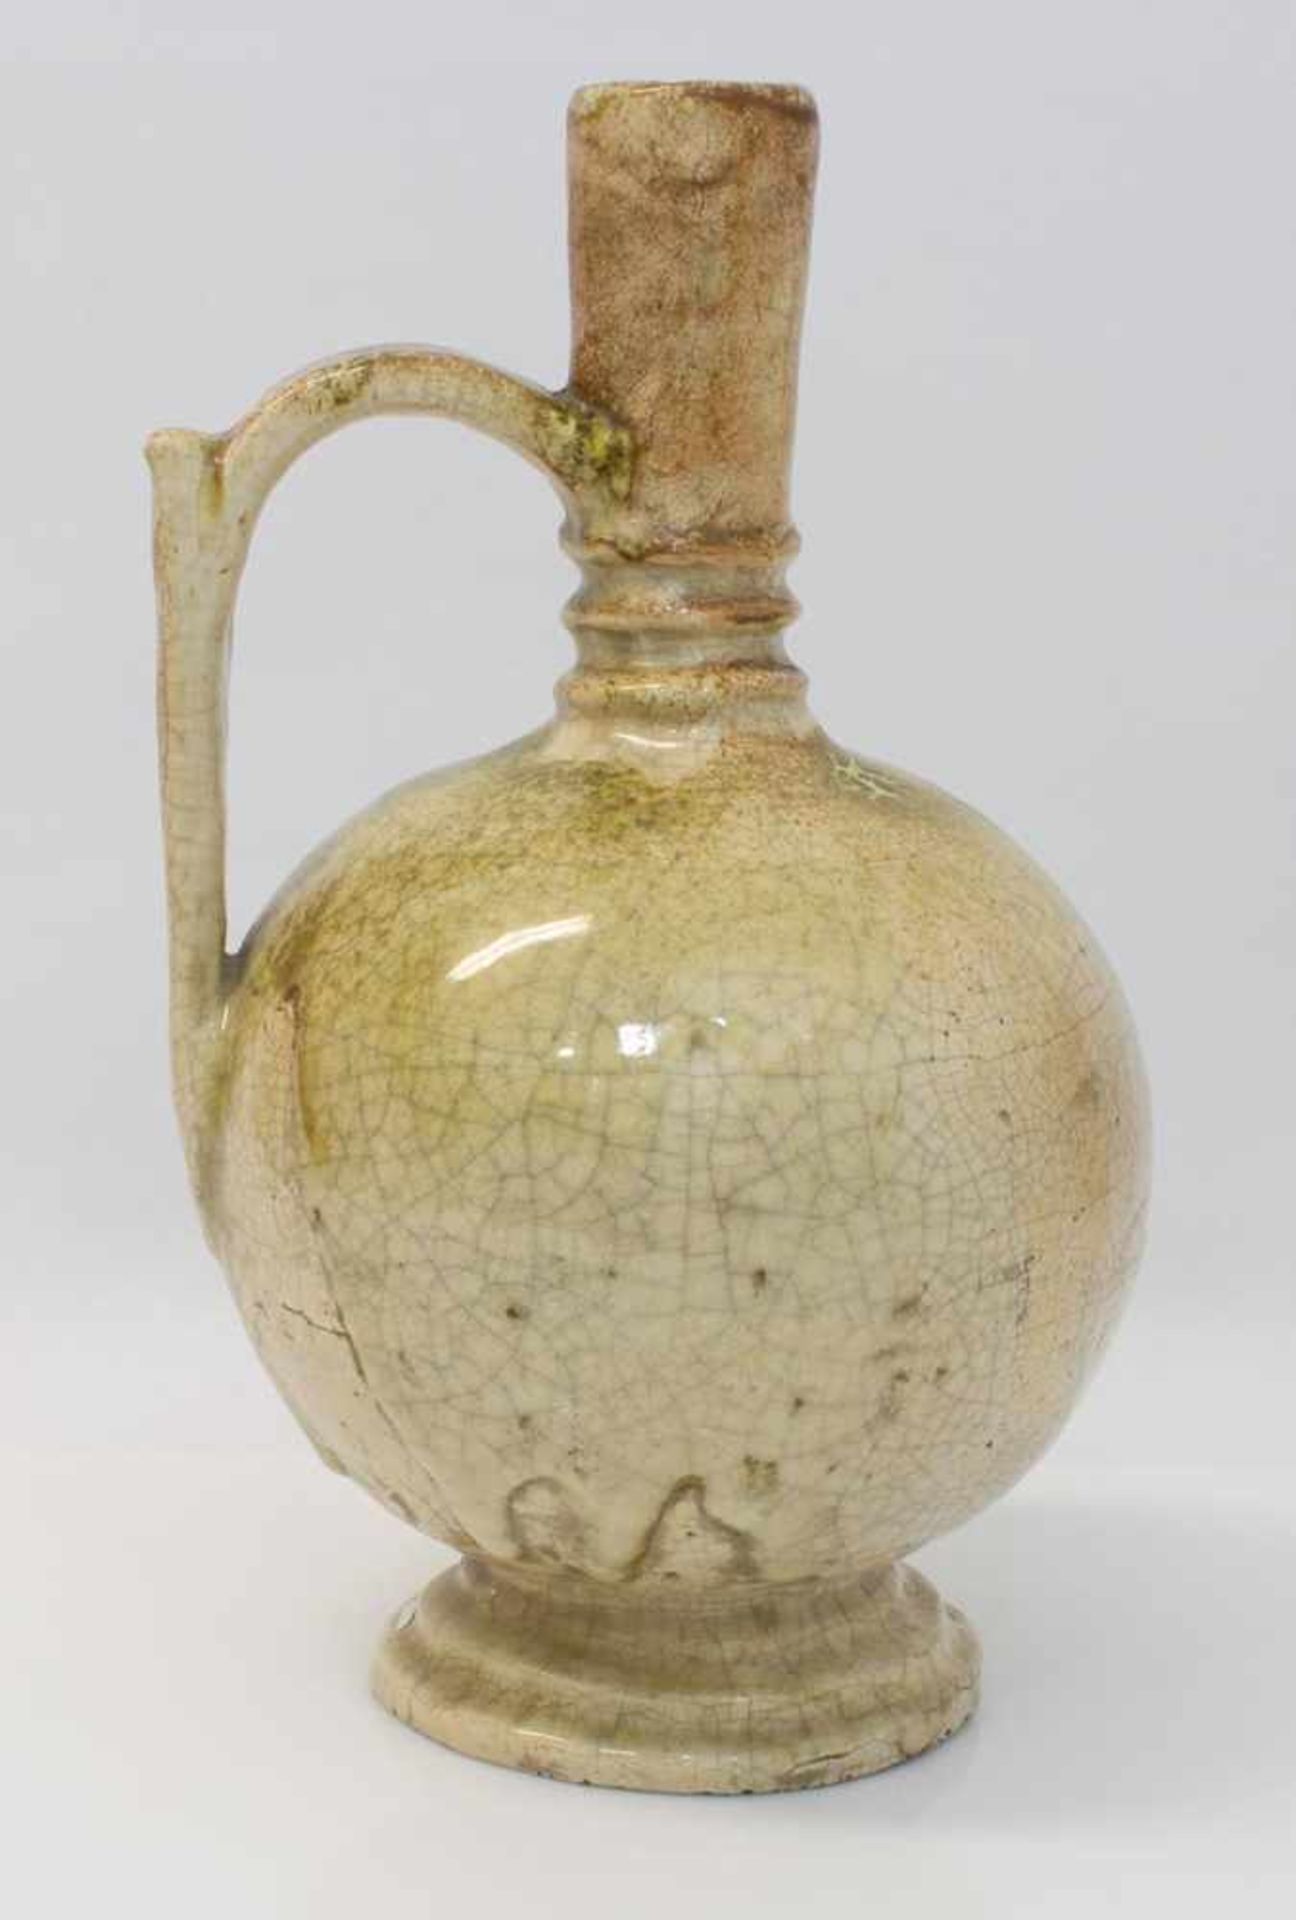 Henkelkrug antiker Henkelkrug, beige glasiert mit Kraquele, kugeliger Korpus mit breitem Standring